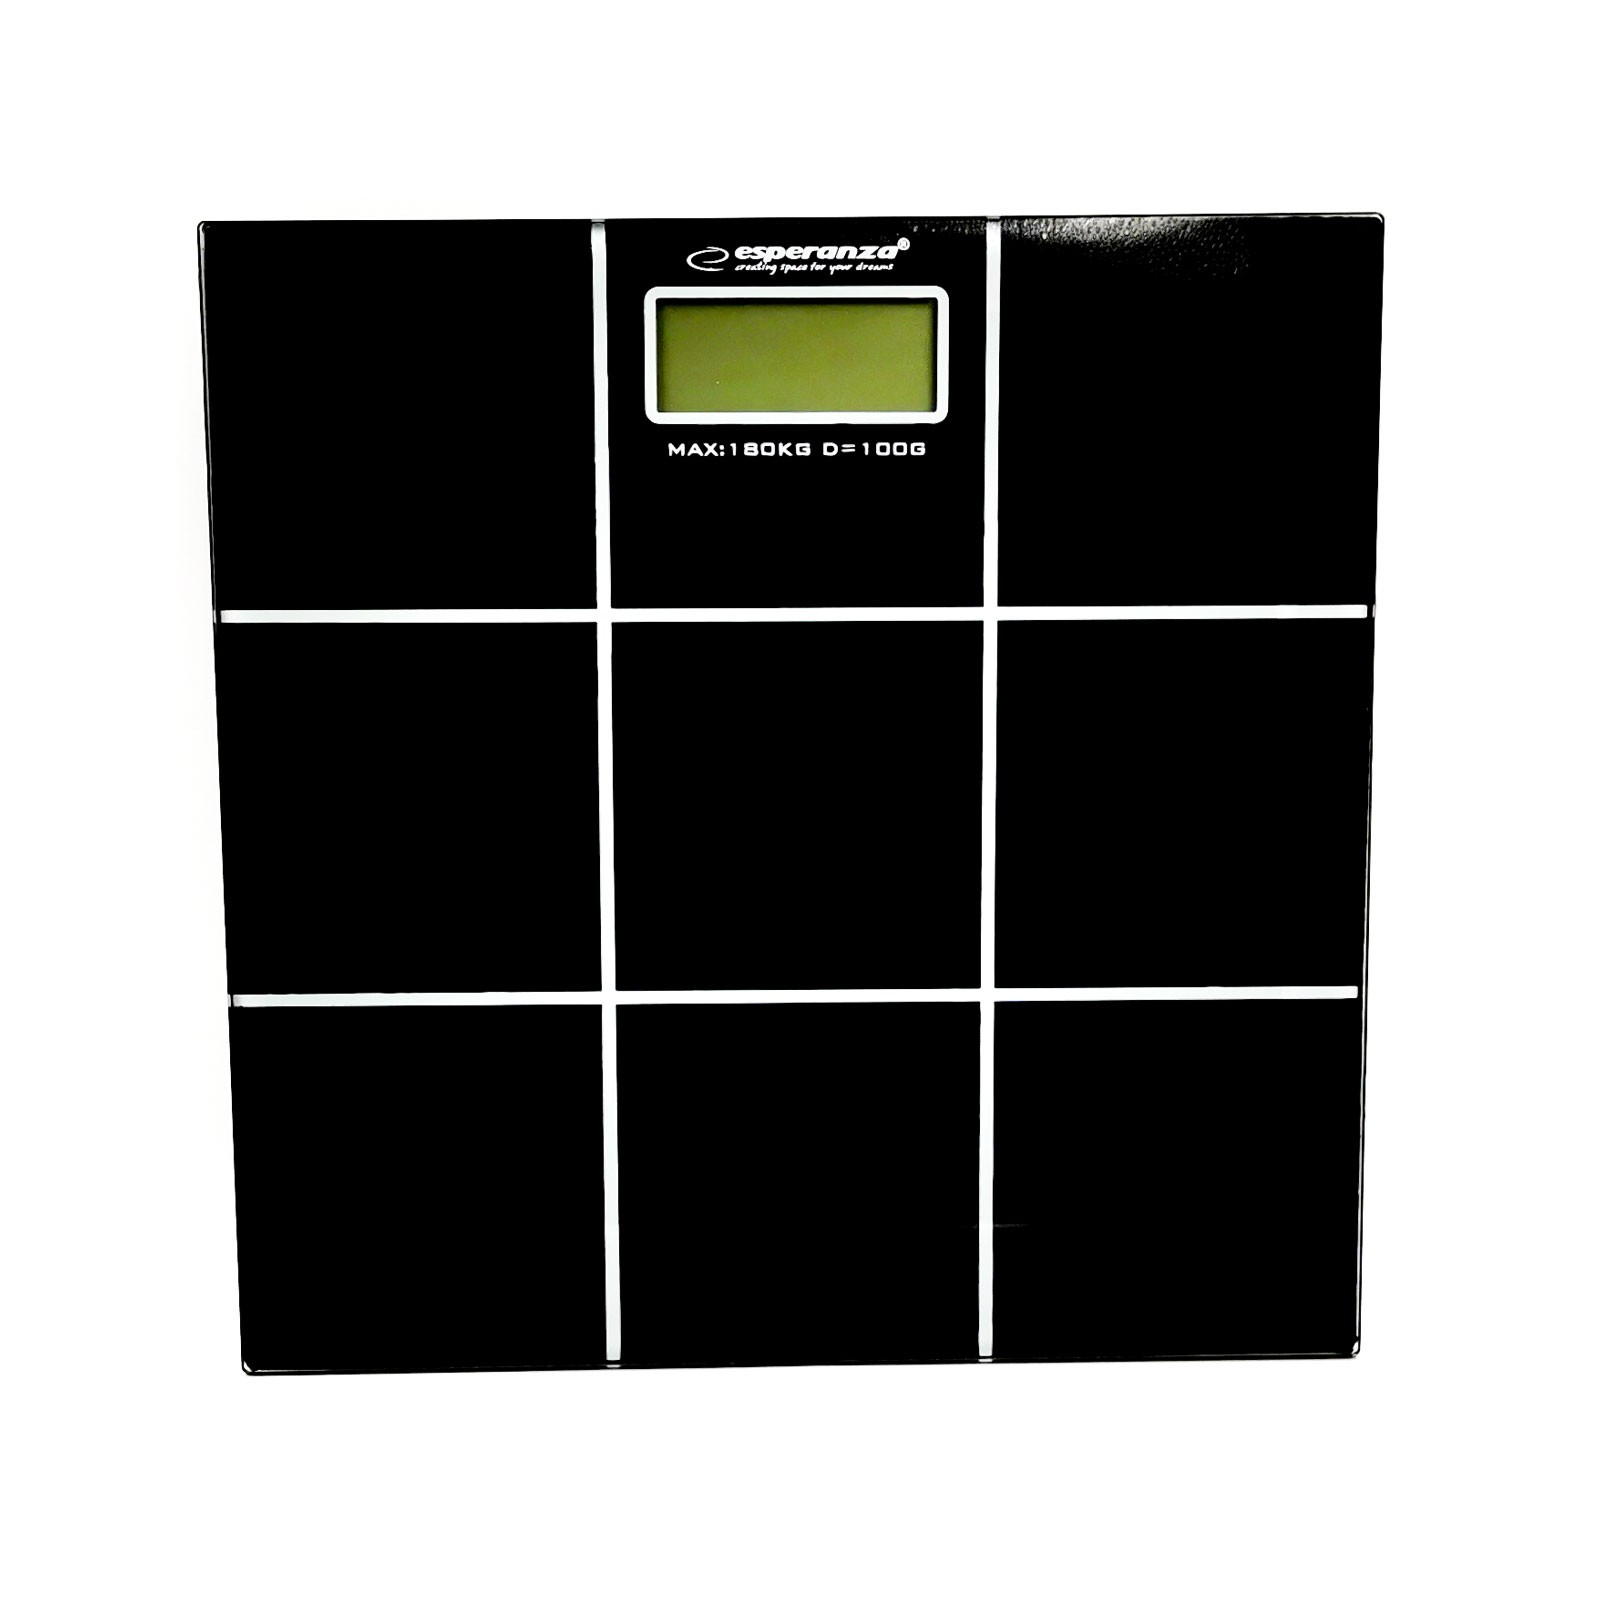 Esperanza EBS004 Salsa osobní digitální váha do 180kg / 100g